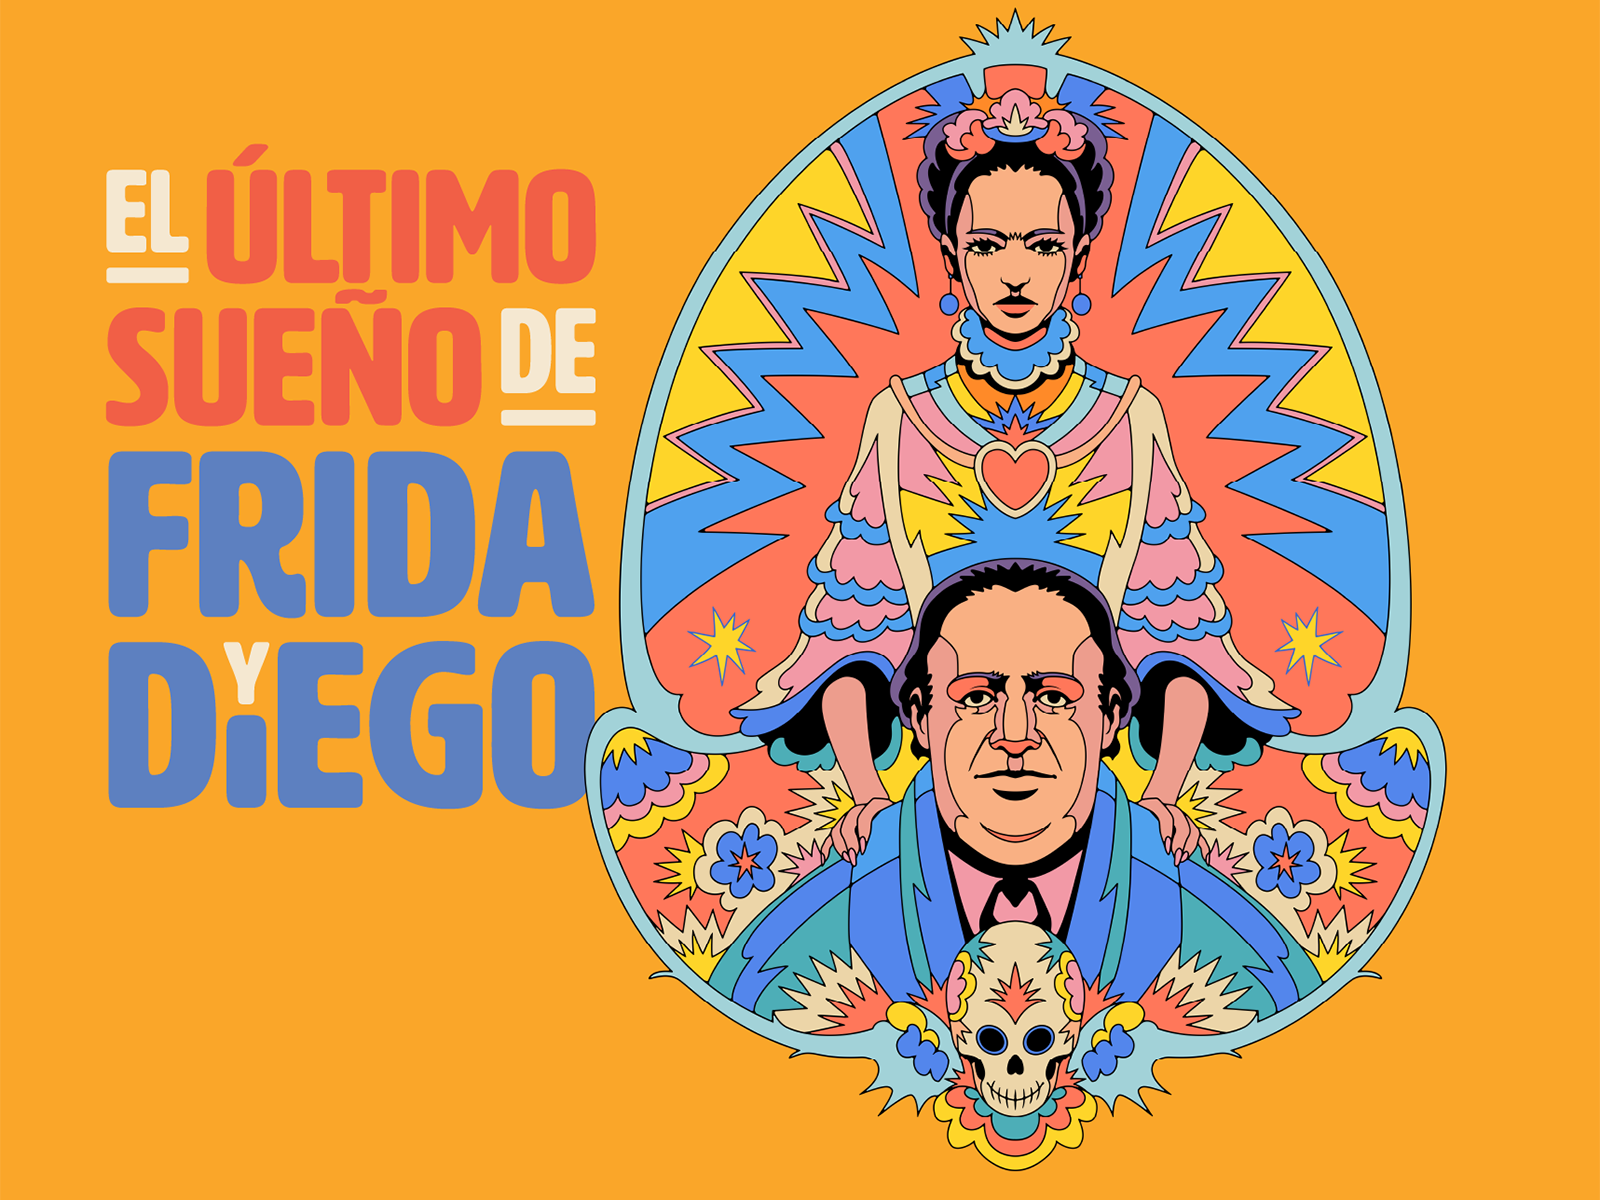 Featuring El último sueño de Frida y Diego